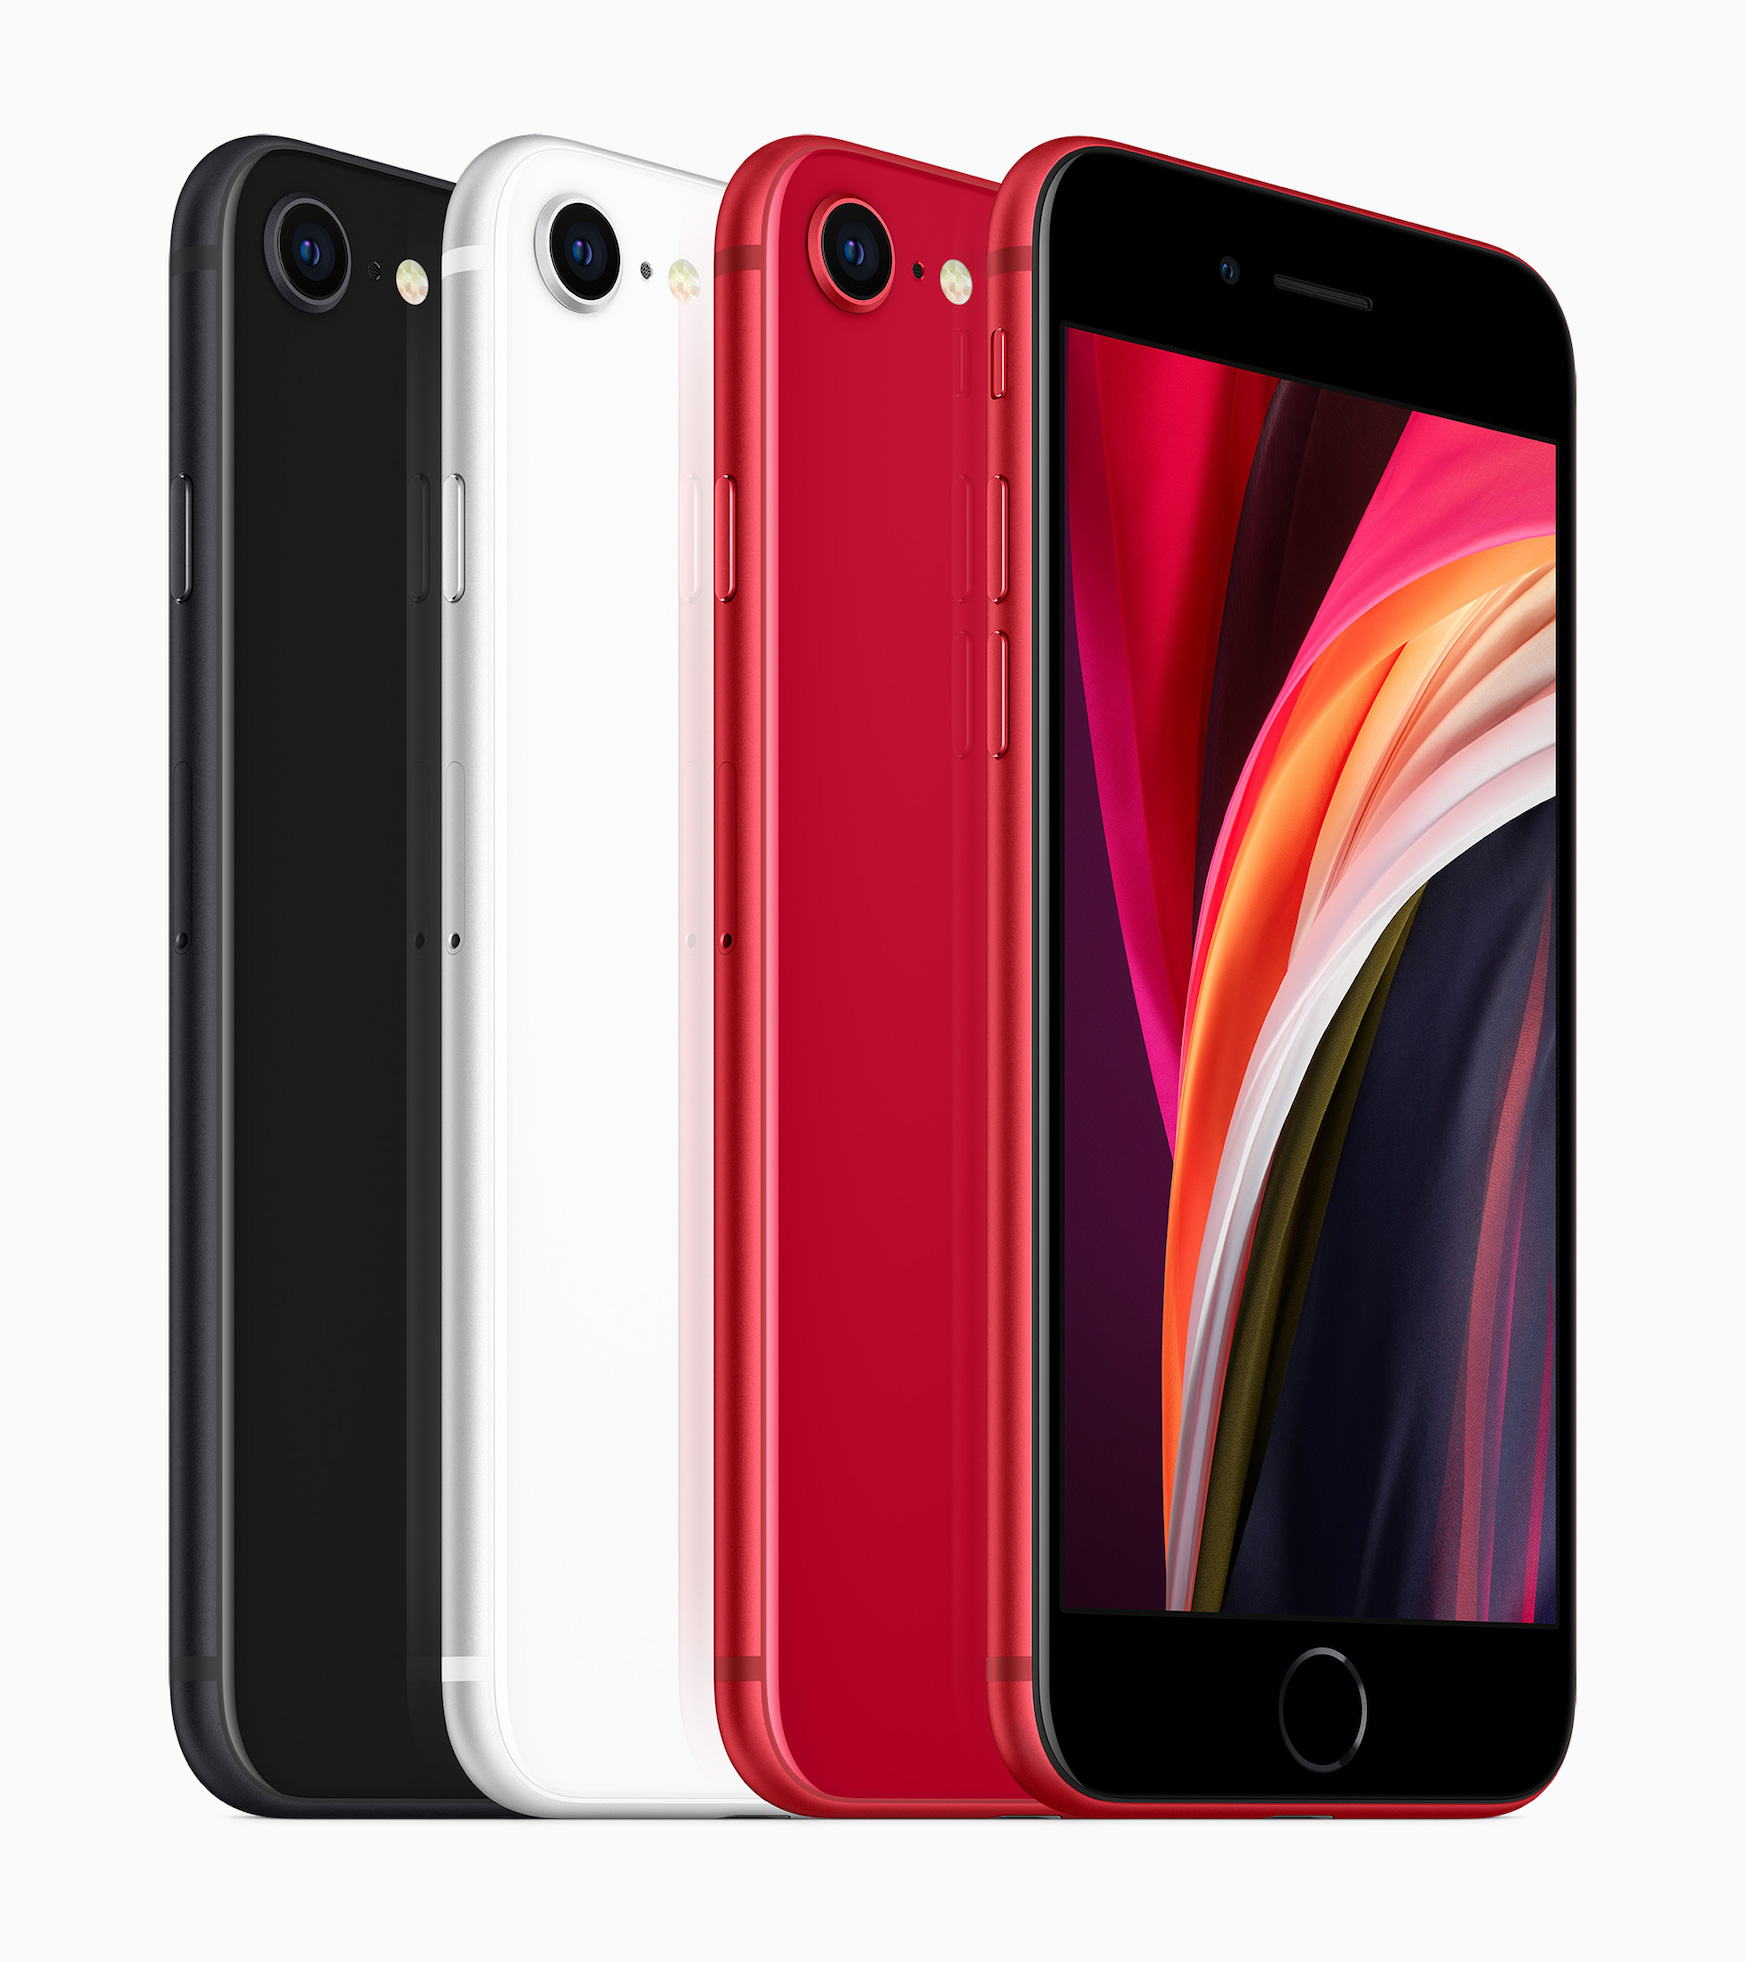 Đánh giá chi tiết iPhone SE 2020: Hiệu năng mạnh mẽ và giá trị tuyệt vời 2